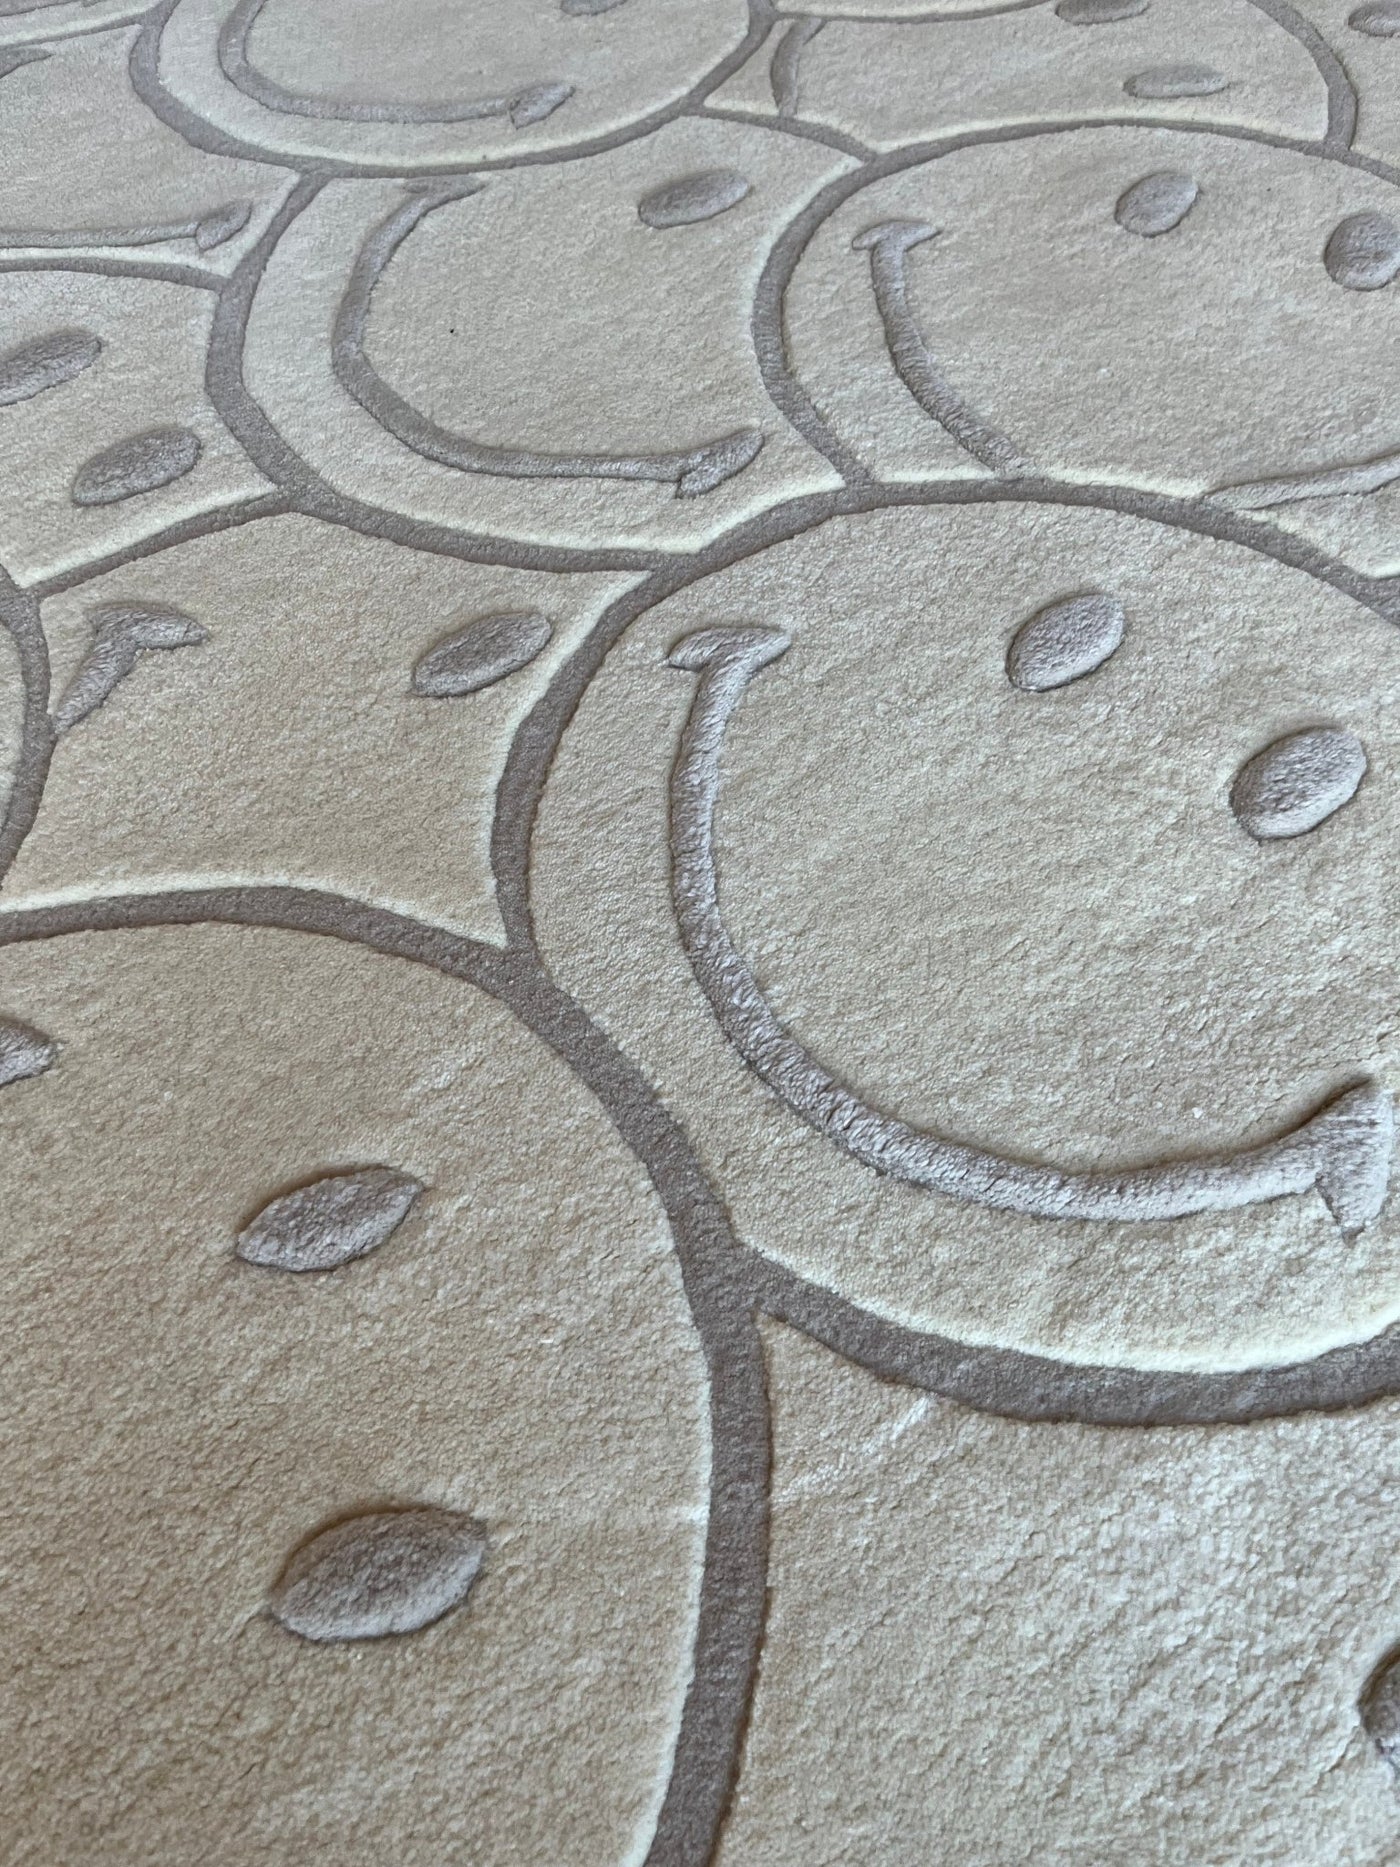 Maison Deux Smiley® Teppich aus 100% neuseeländischer Wolle ca. 180x150cm - Bitangel RENOVATE & FURNISH HOMES GmbH